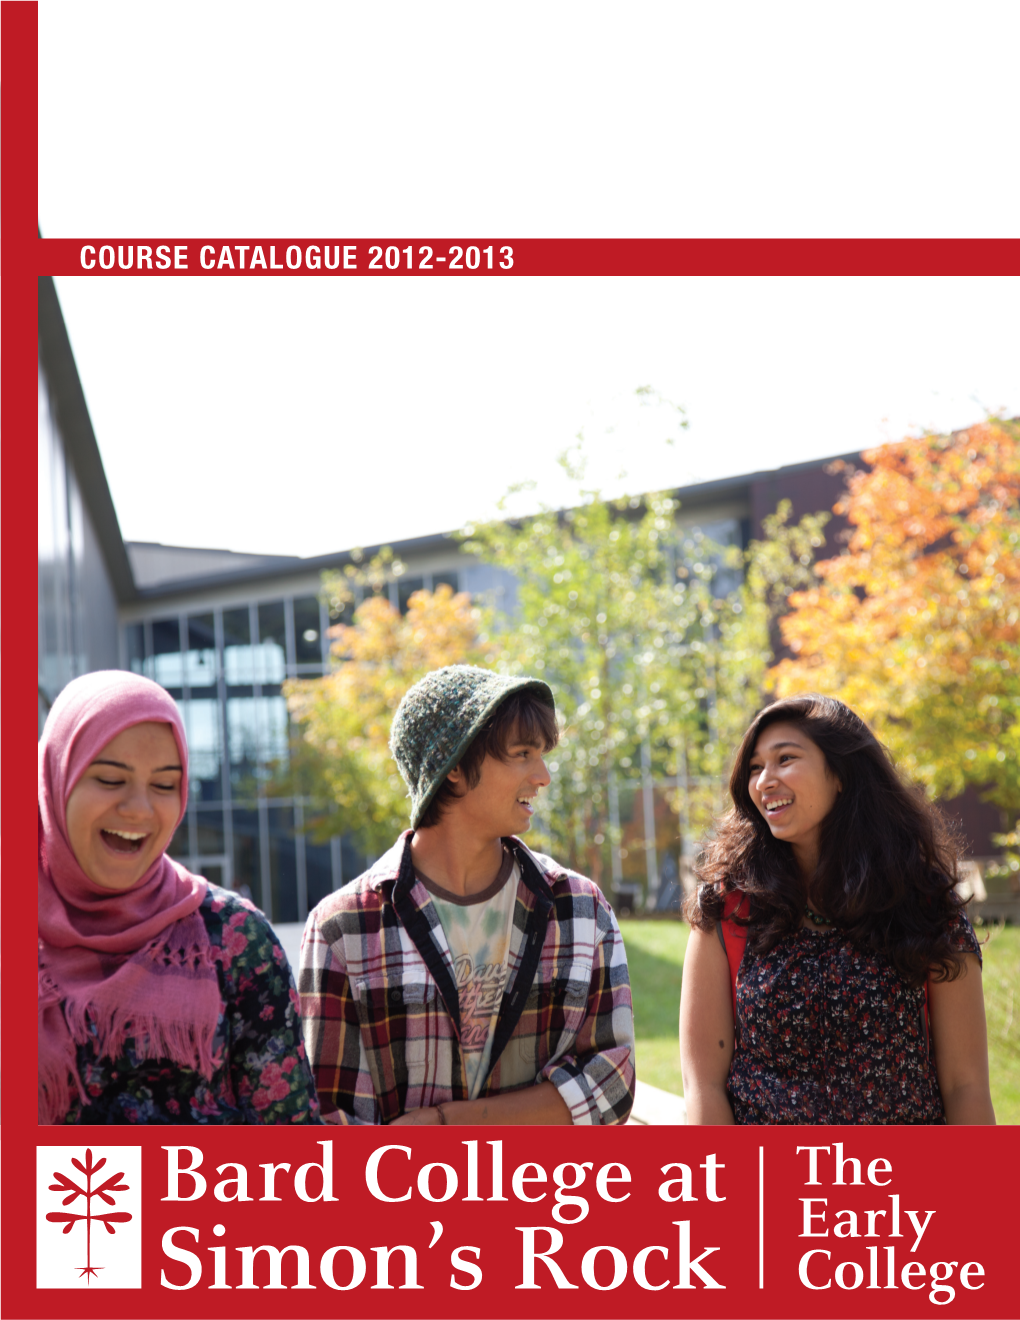 Bard College at Simon's Rock 2012-2013 Course Catalogue